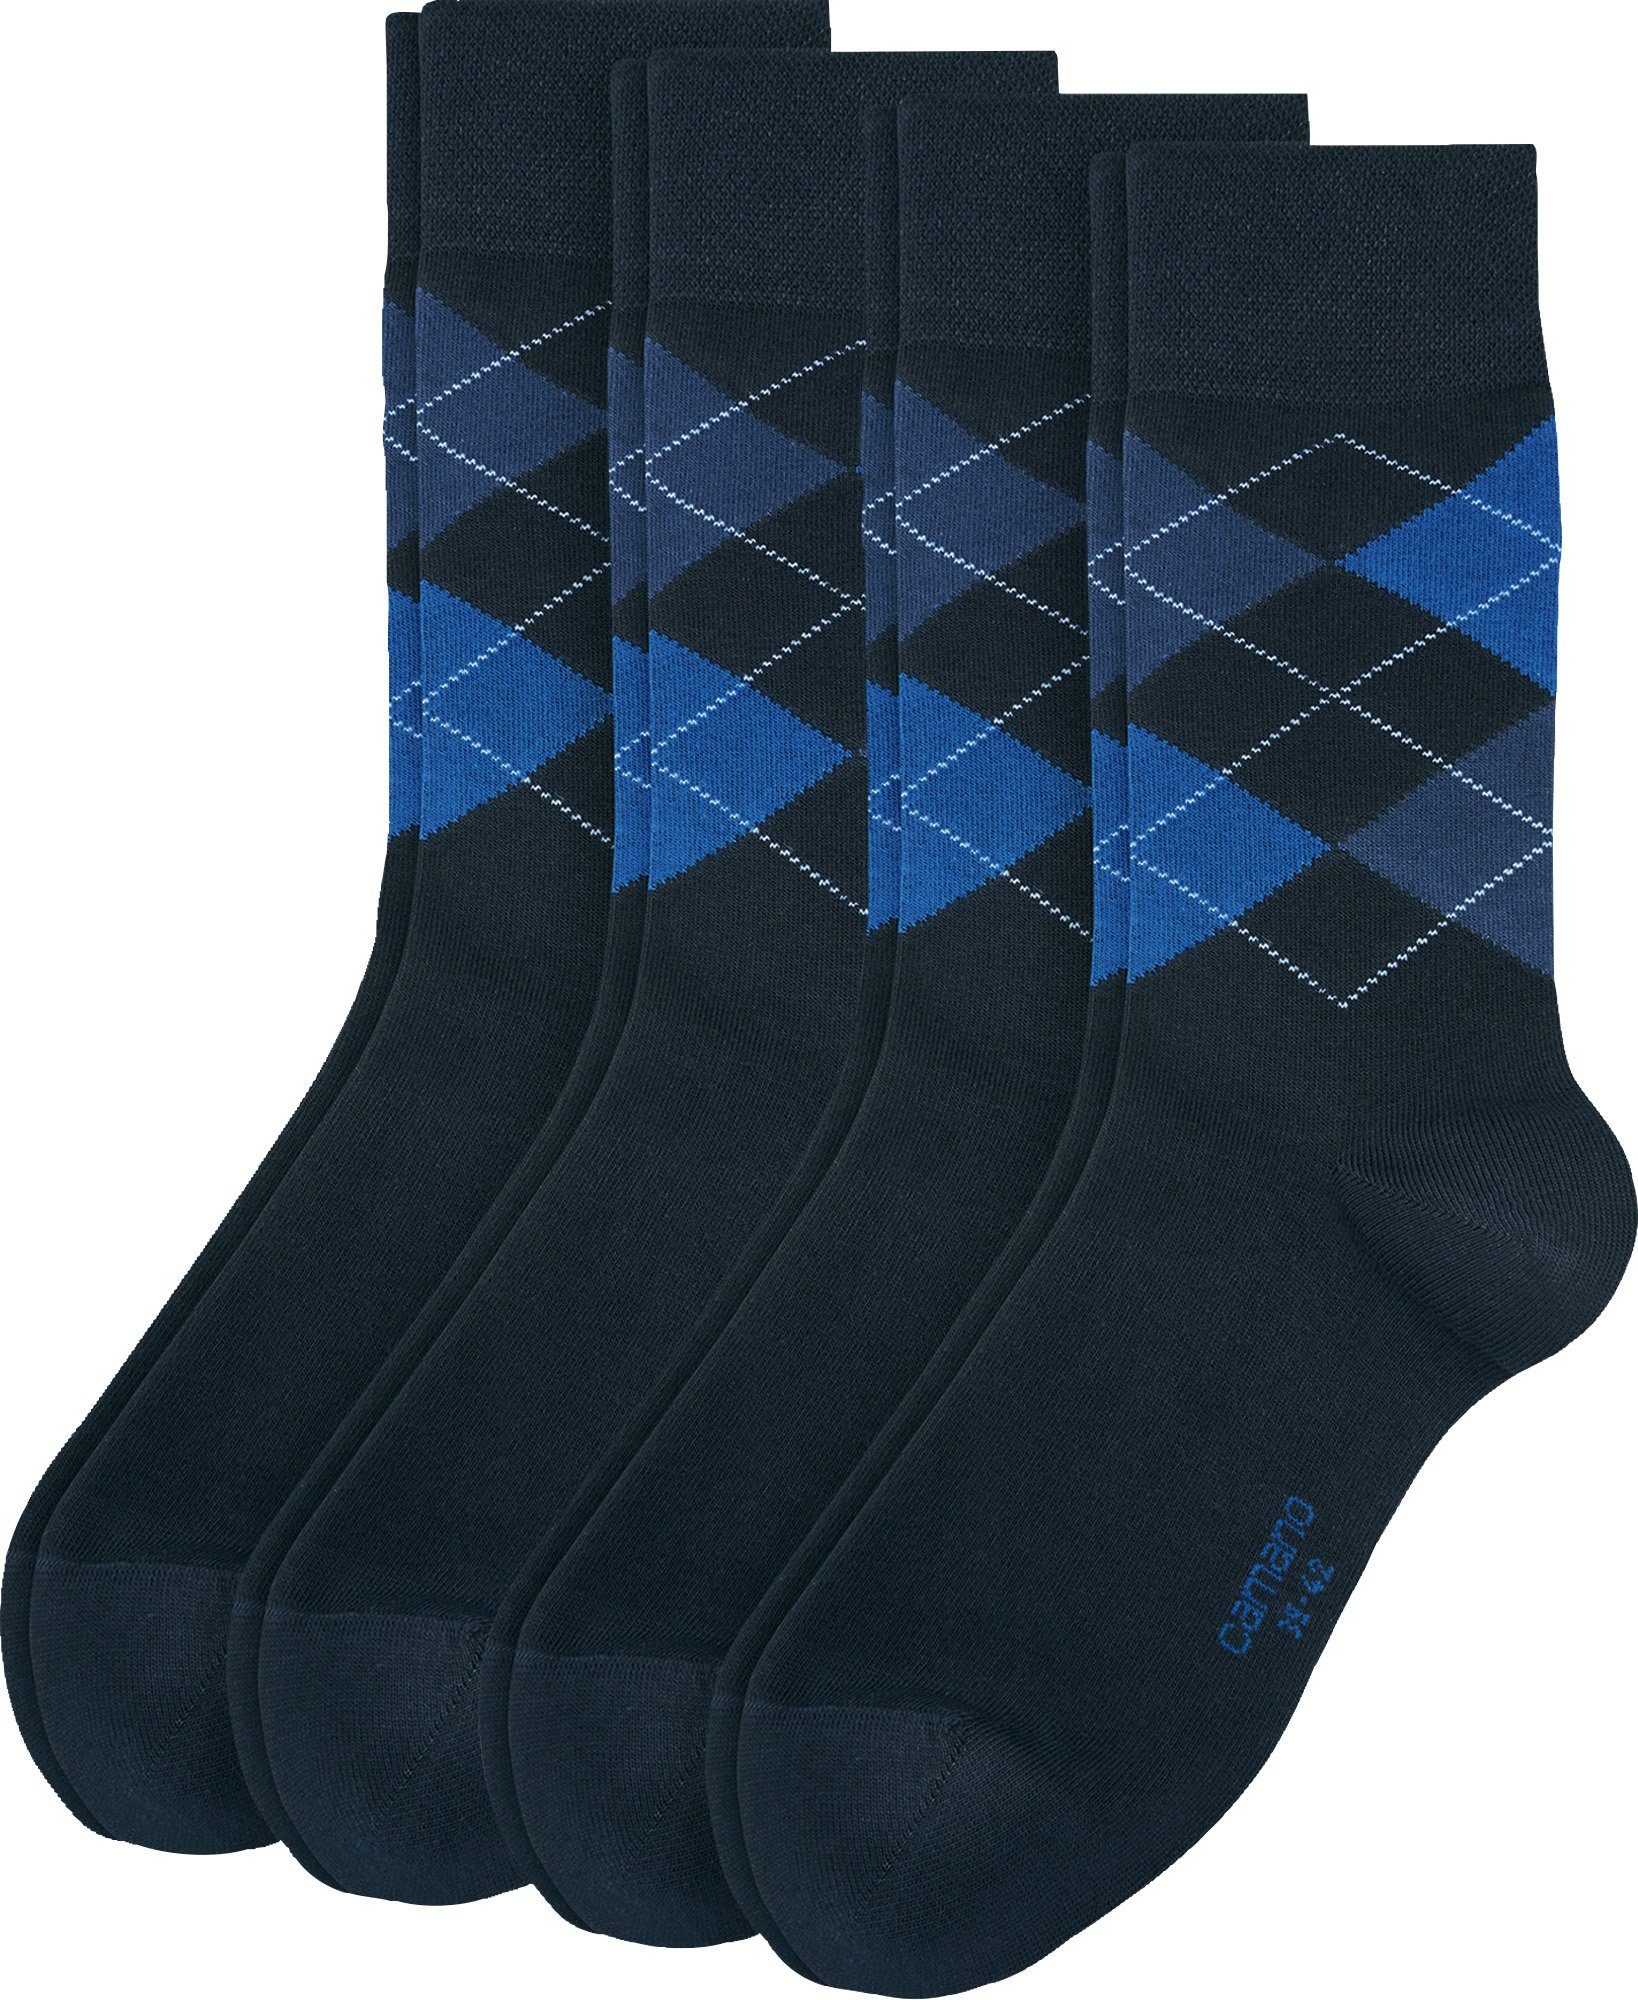 Camano Socken Herren-Socken gemustert 4 Paar blau